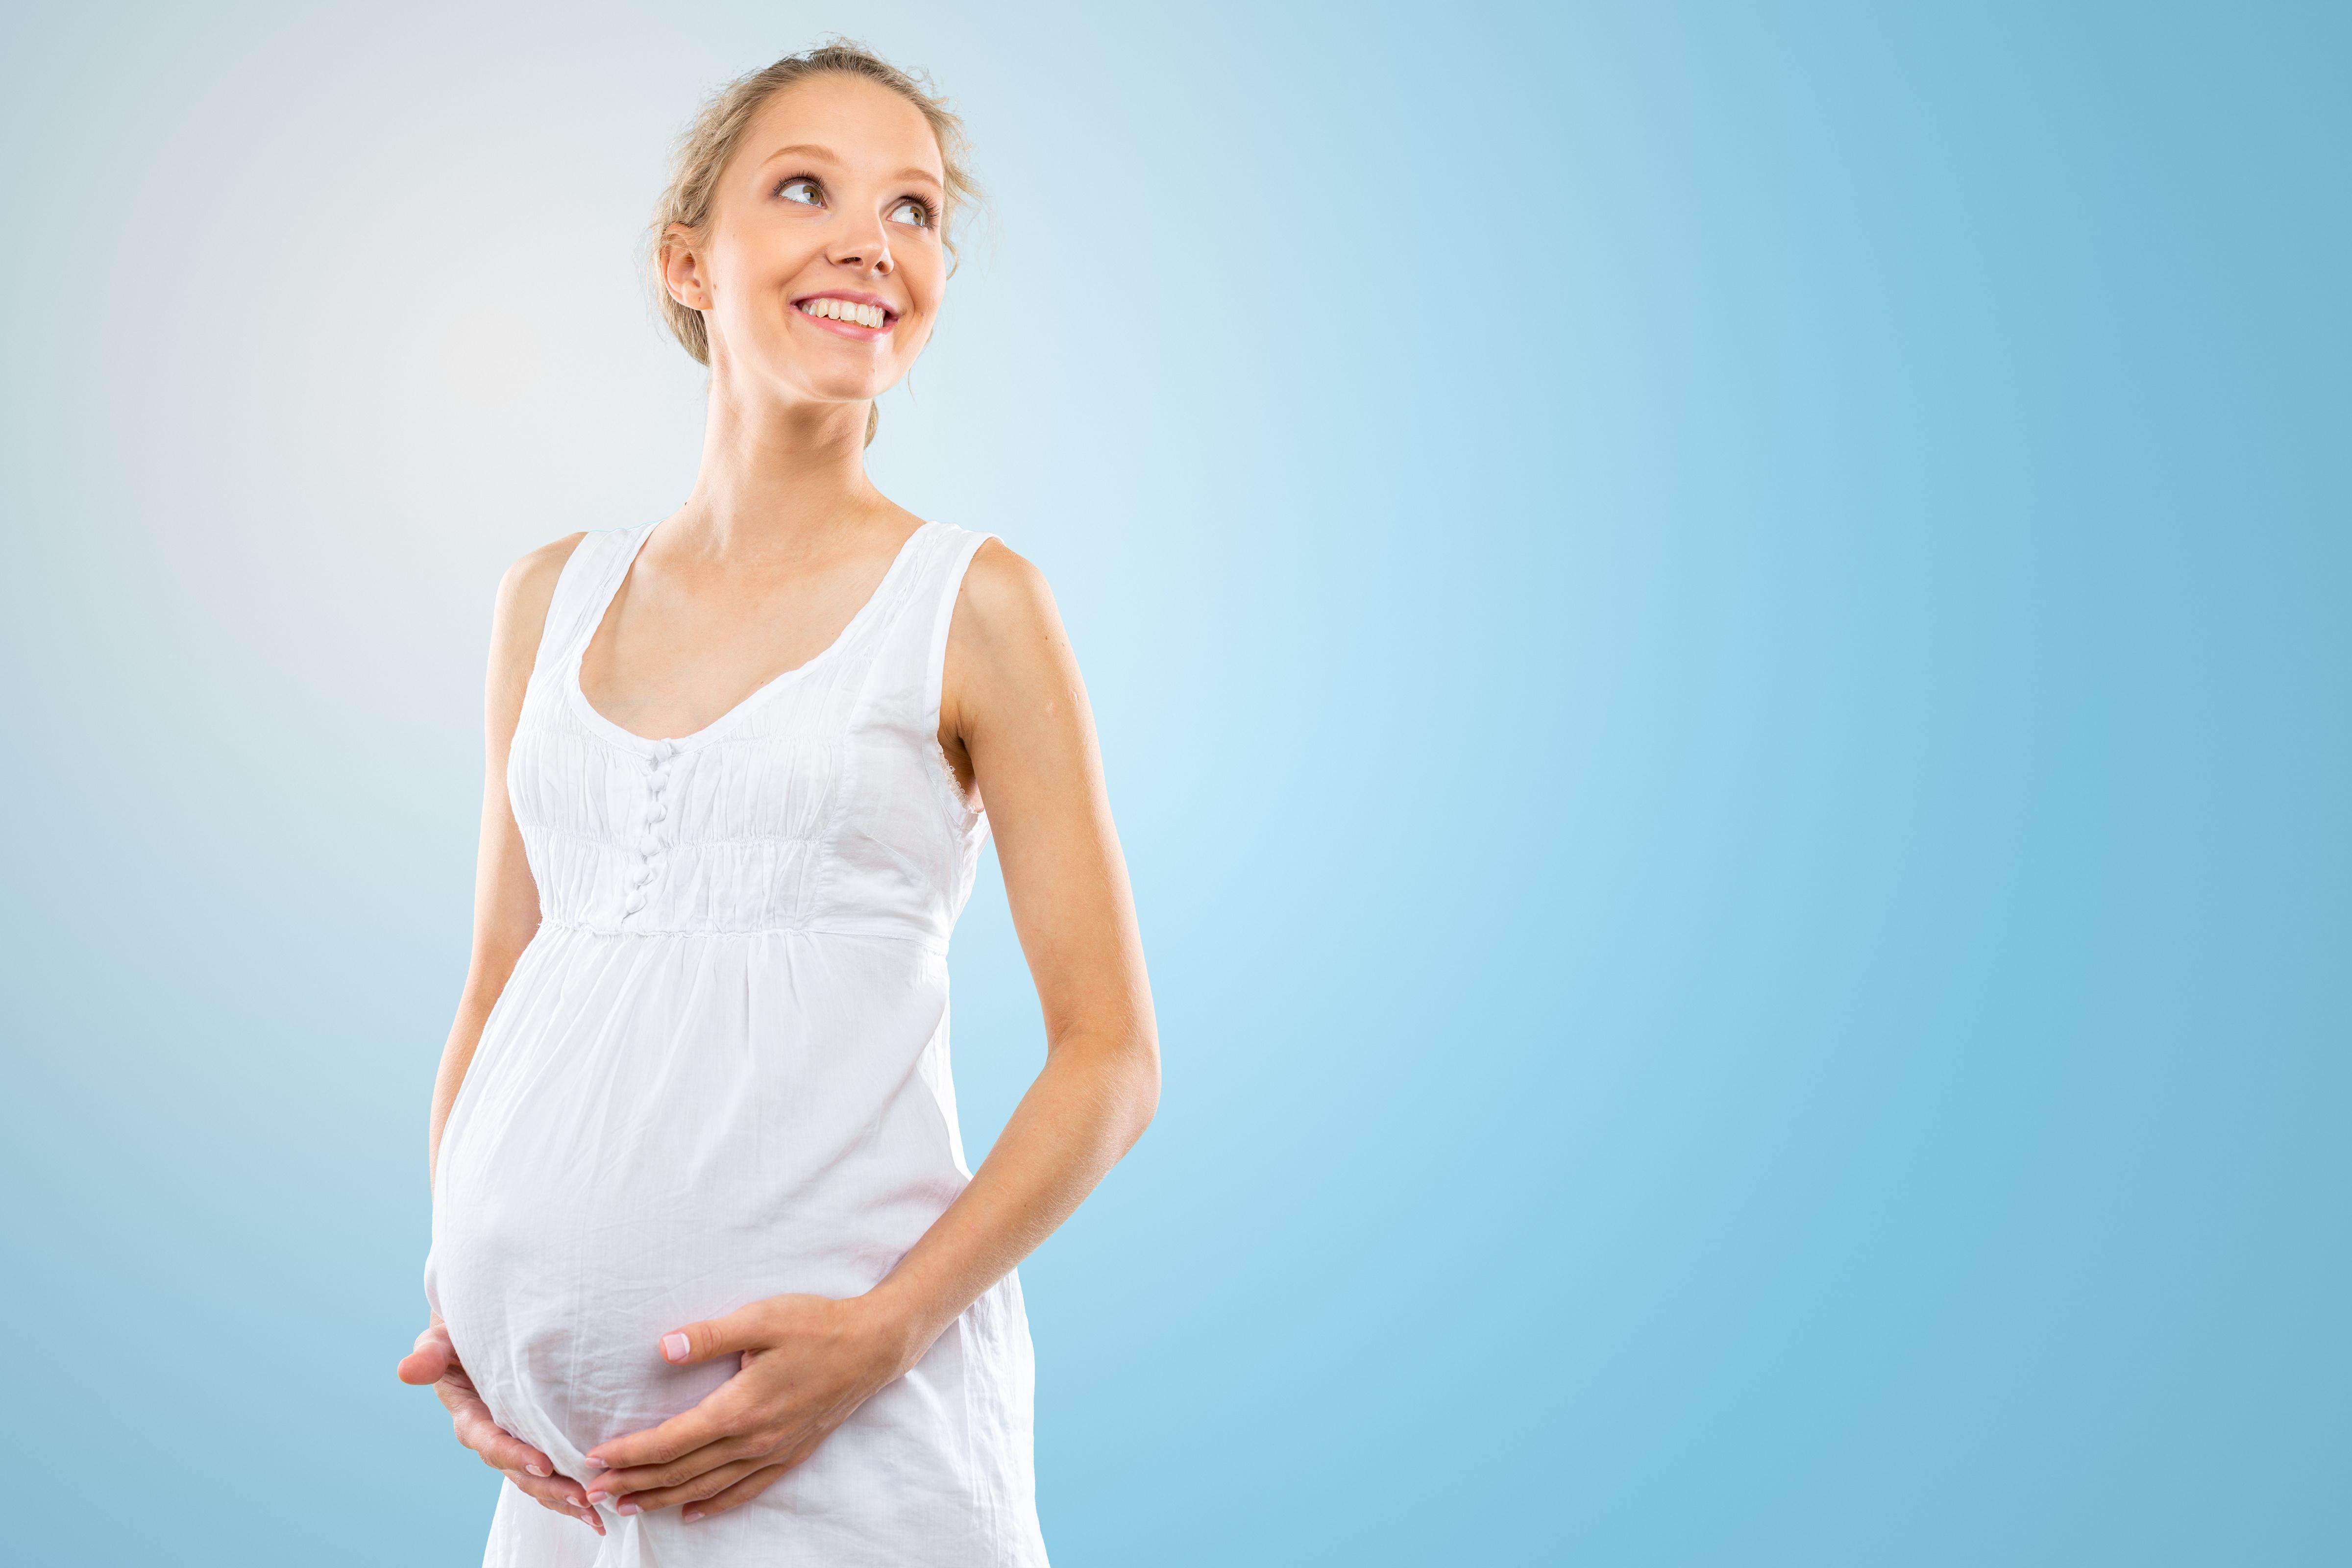 5 мифов о наследственности и беременности